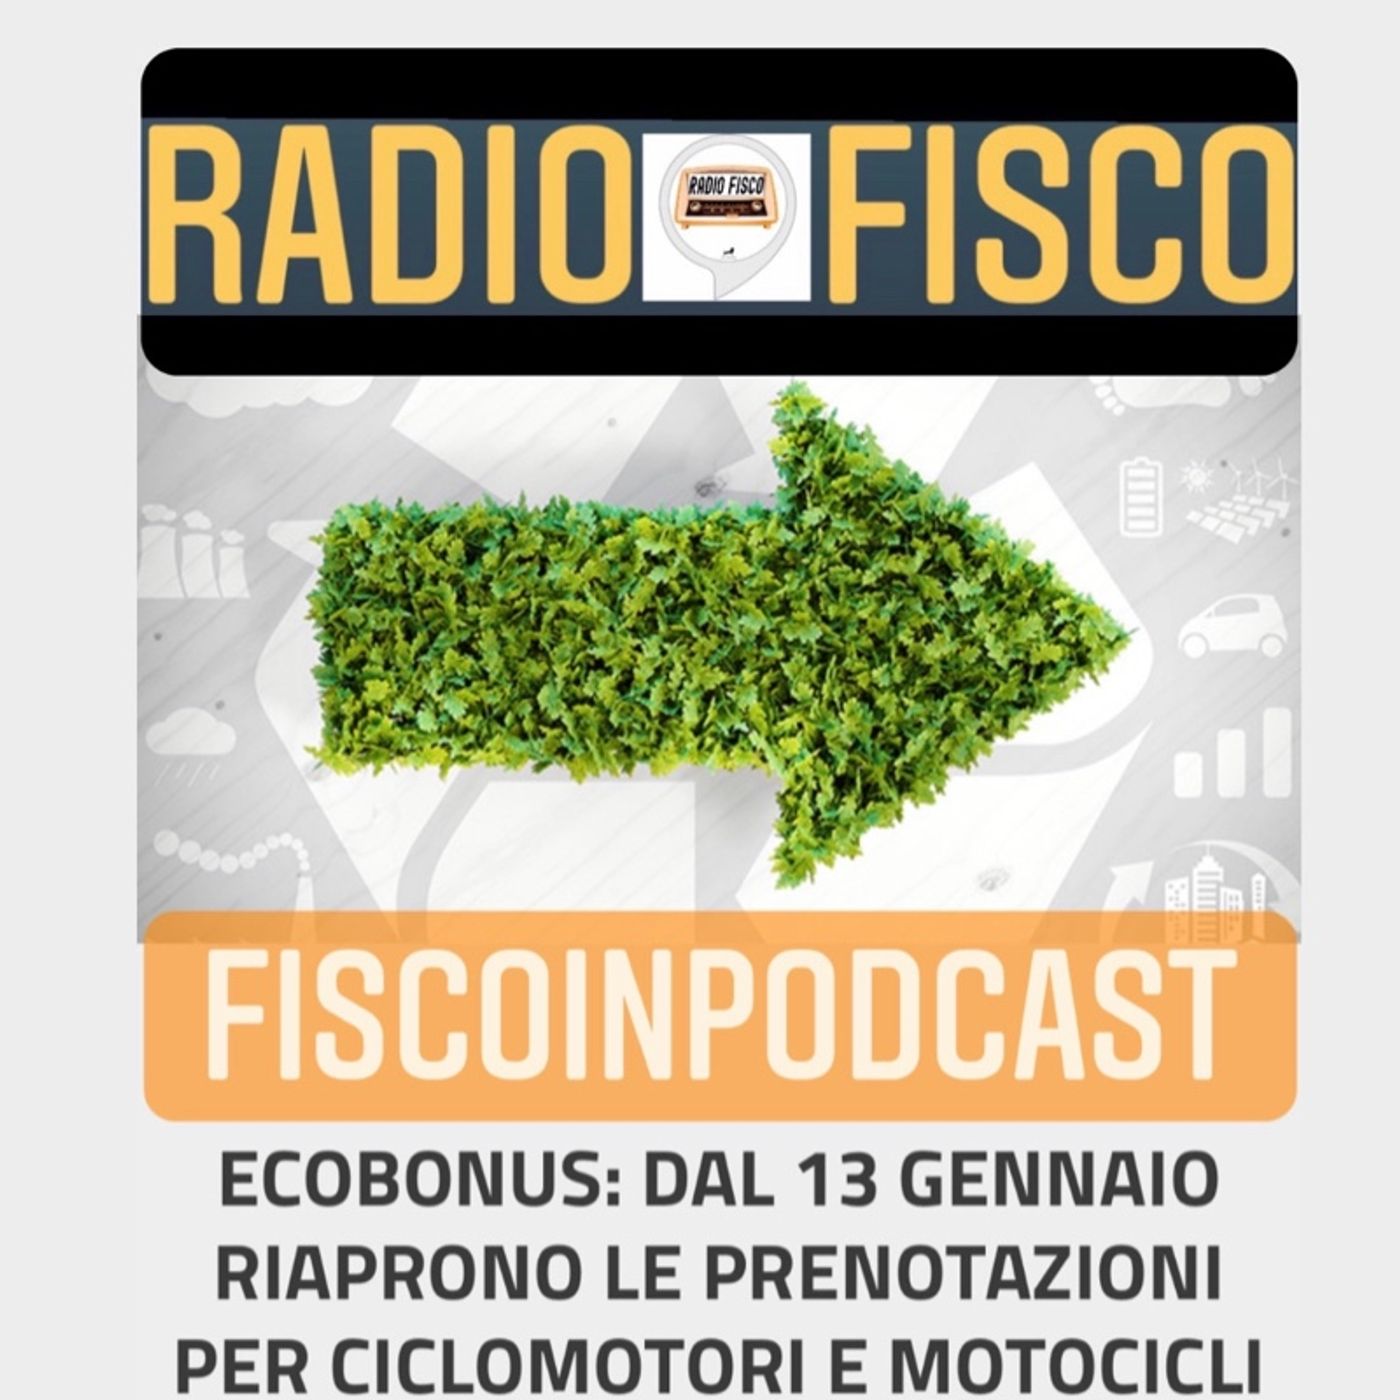 Fisco in Podcast Pillole di utilita' : il 13 Gennaio riaprono le prenotazioni per ciclomotori e motocicli